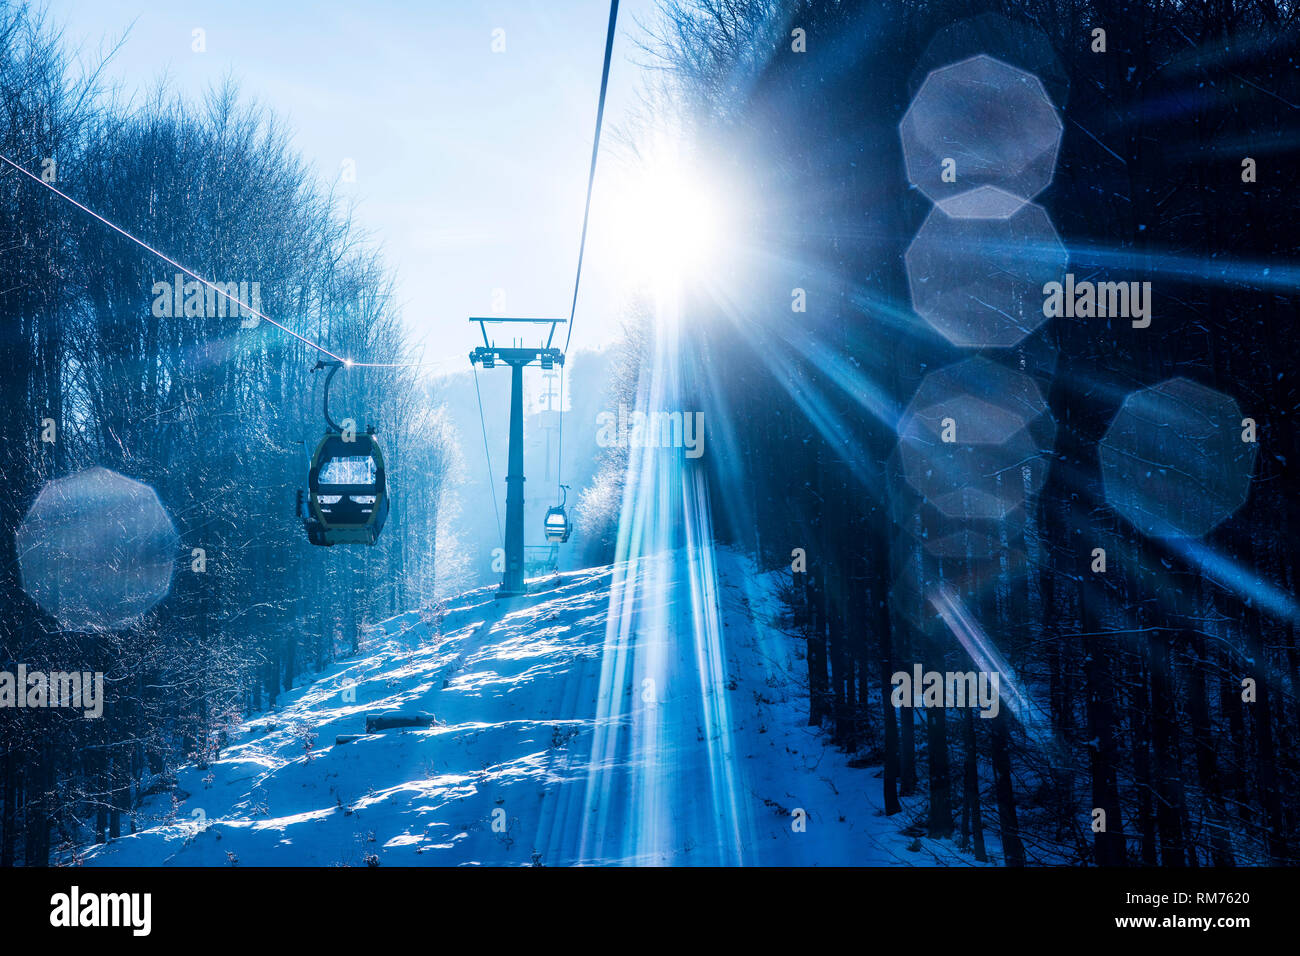 SZYNDZIELNIA, POLAND - FEBRUARY 5, 2019: Cableway to Szyndzielnia in Beskidy Polish Mountains in winter. Stock Photo